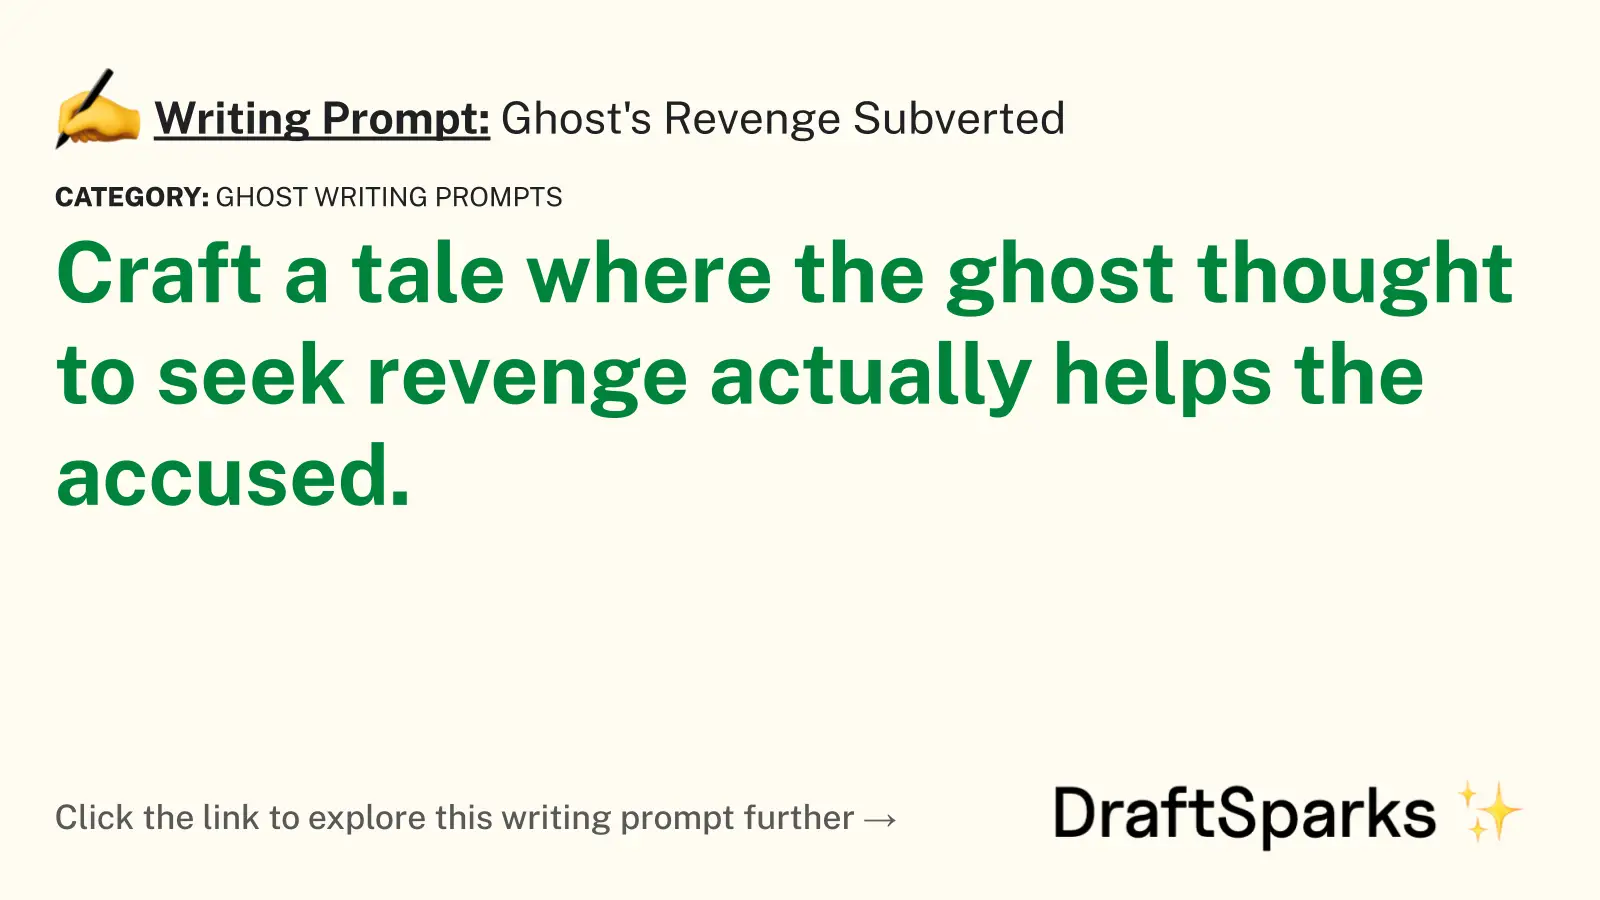 Ghost’s Revenge Subverted